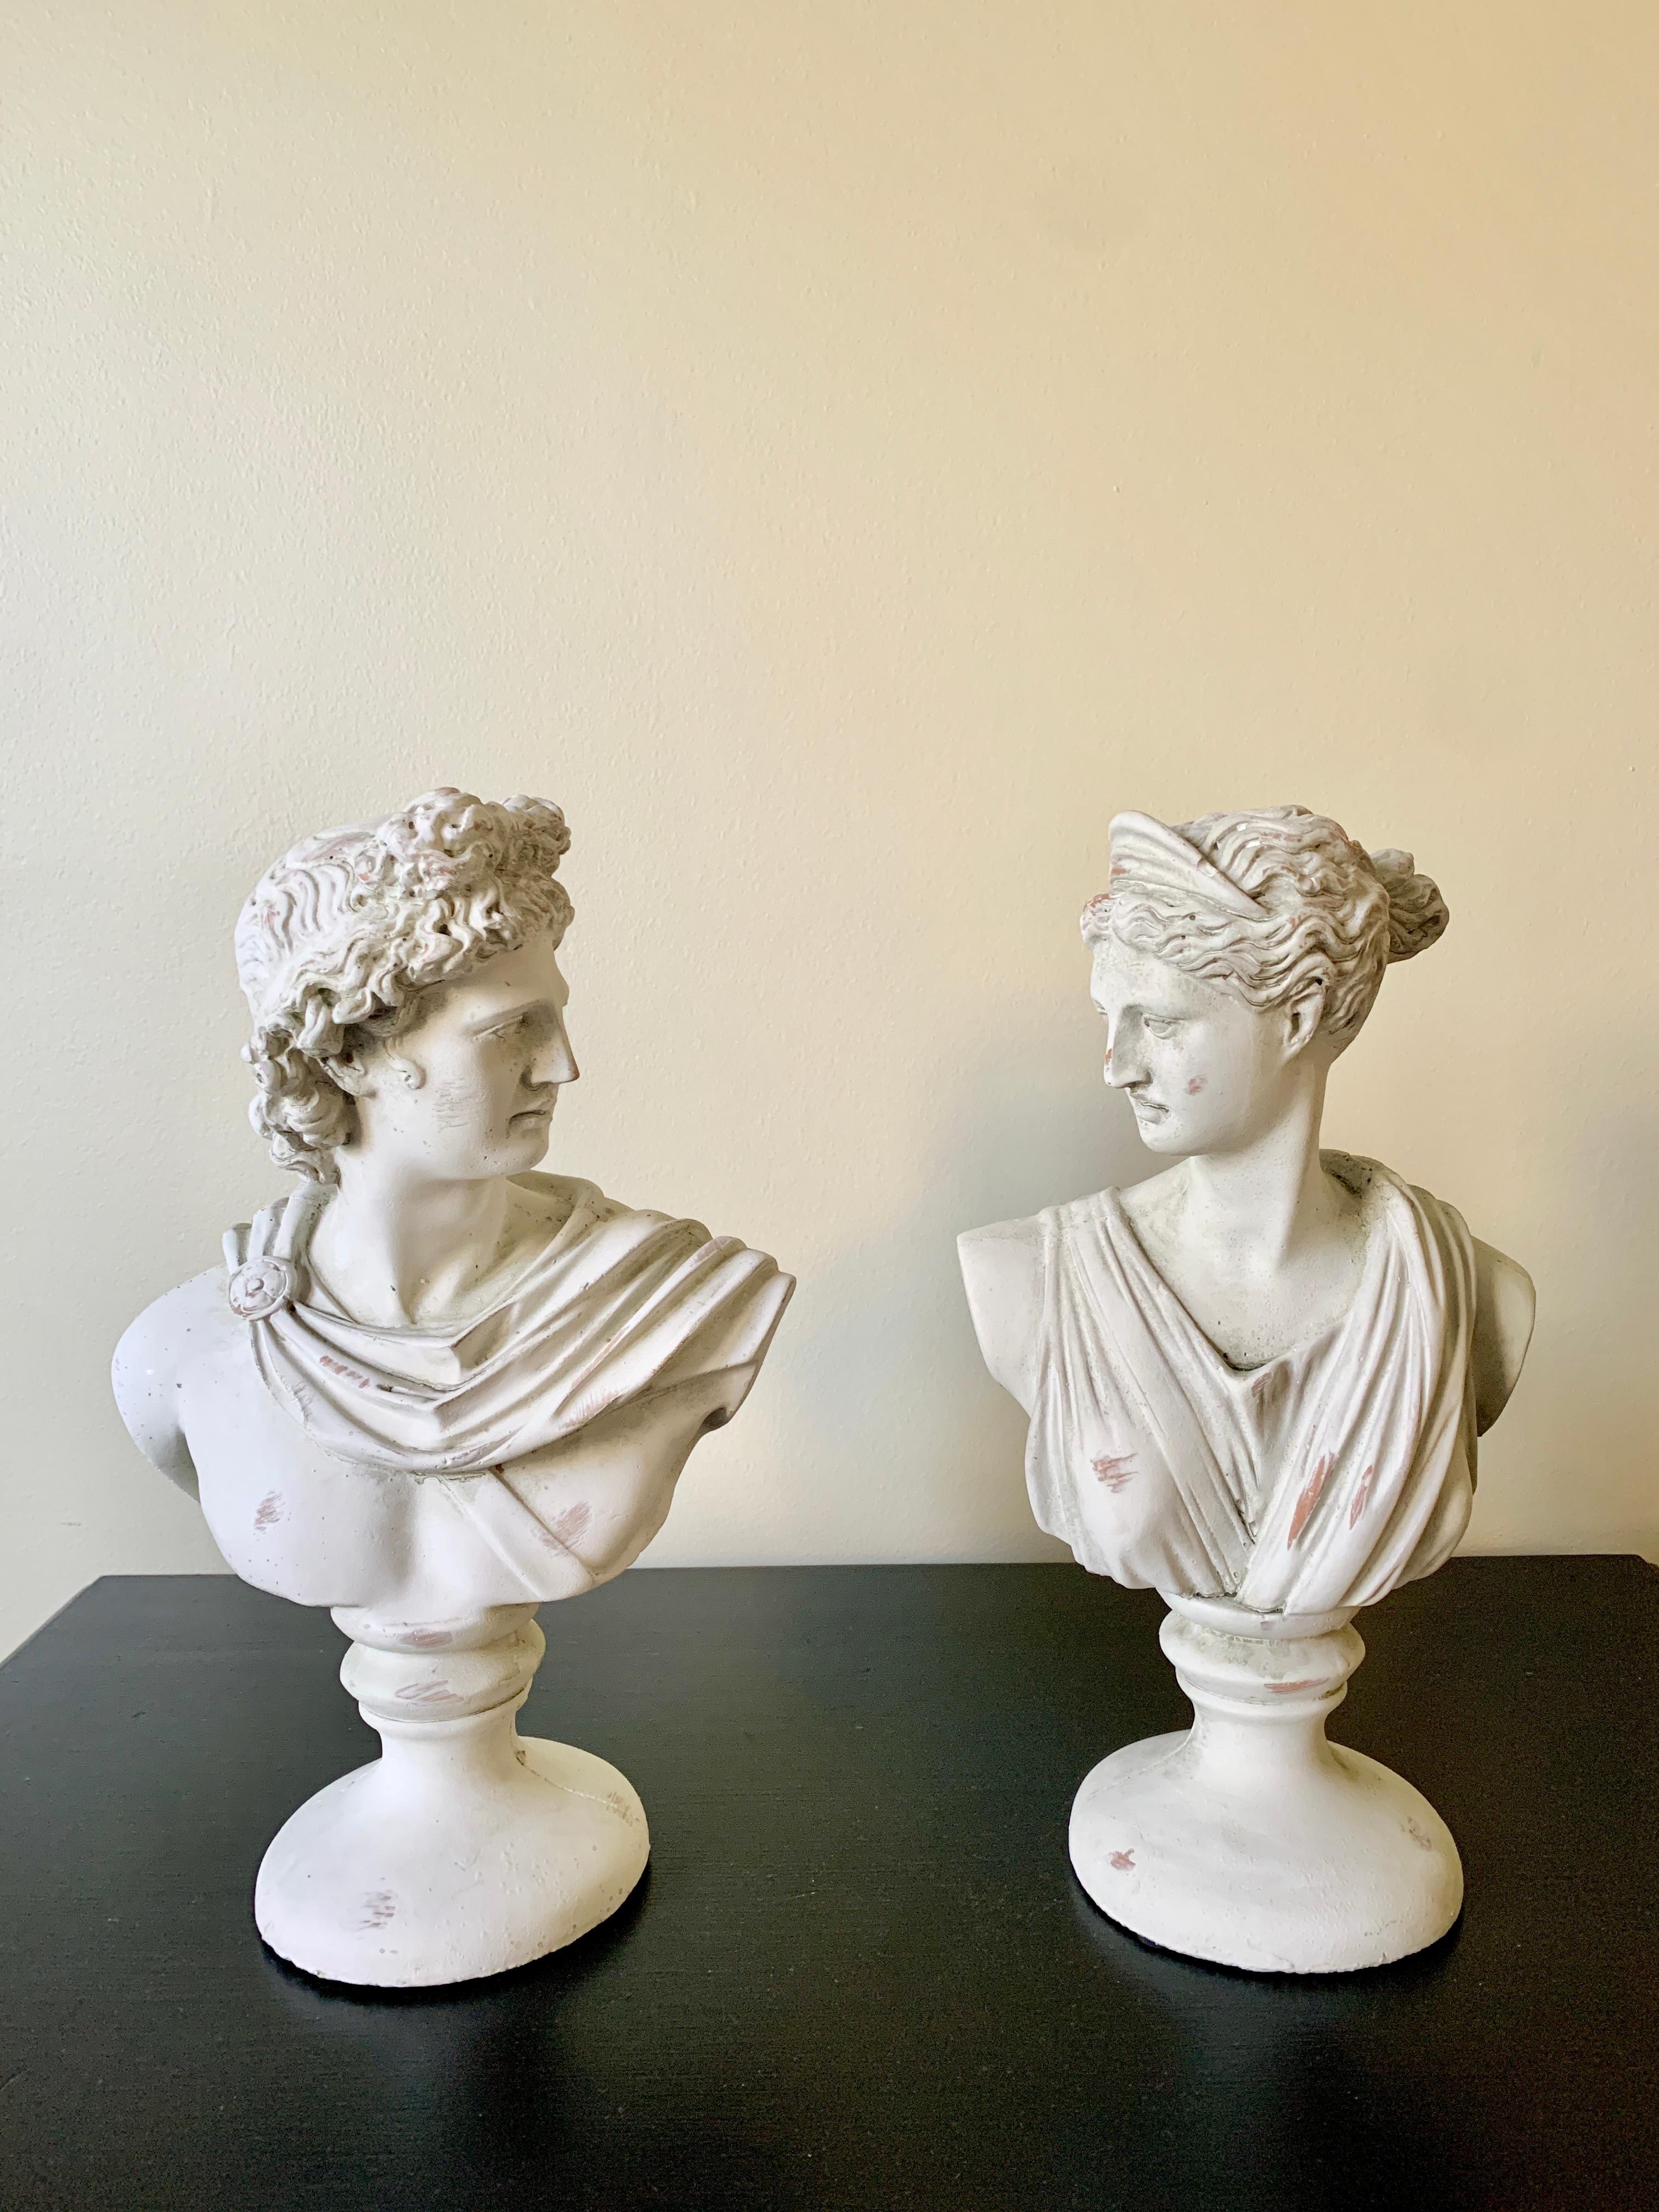 Ein wunderschönes Paar von Gips gegossen neoklassischen Grand Tour Stil männlichen und weiblichen Kopf Büsten von Diana und Apollo Belvedere Gott und Göttin Skulpturen

USA, 21. Jahrhundert

Maße: 8 